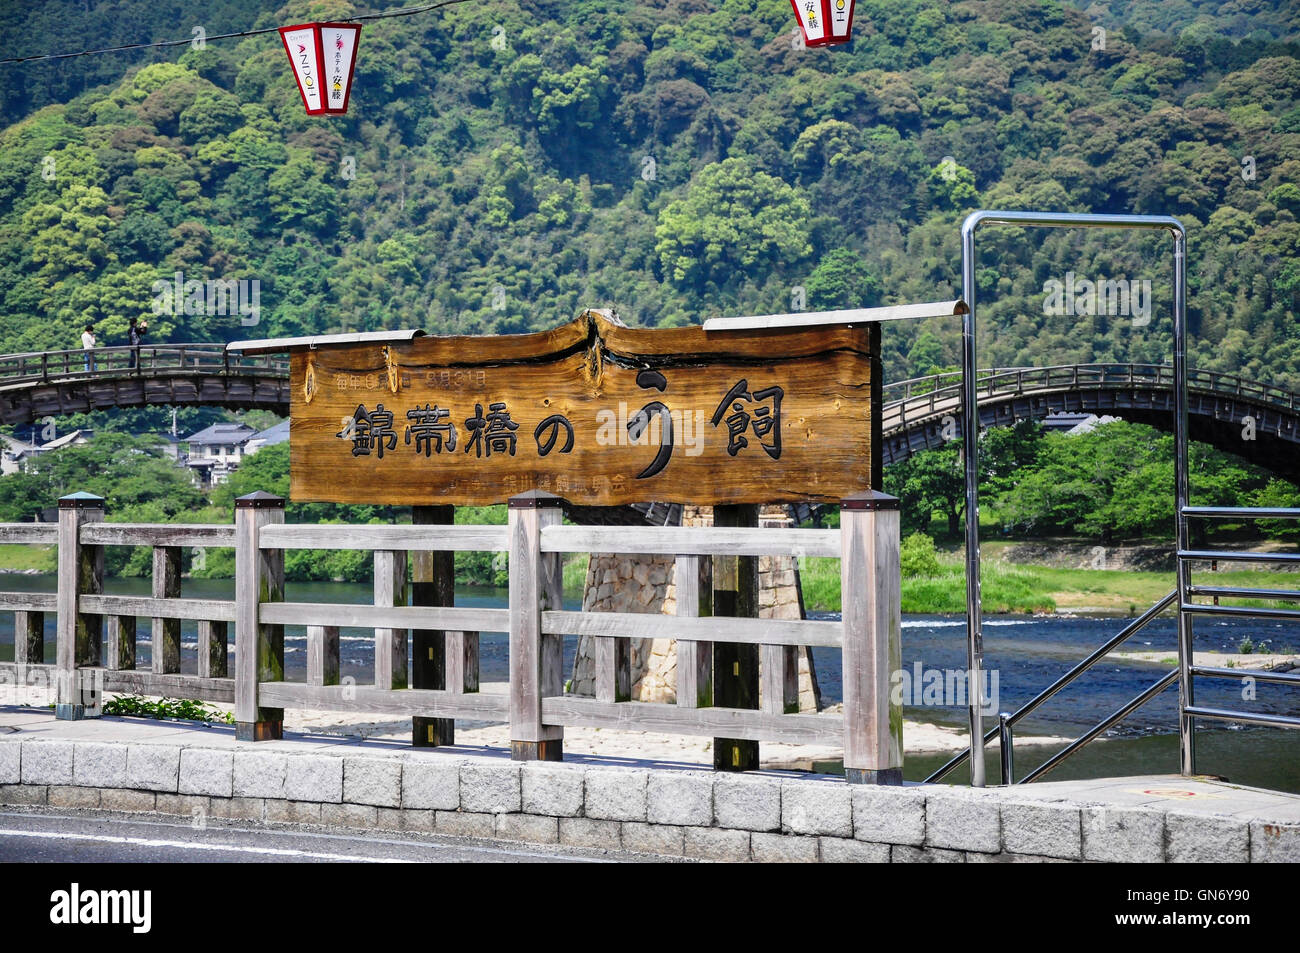 Pancarte de Kintaikyo, la pêche au cormoran, le Japon Iwakuni Banque D'Images